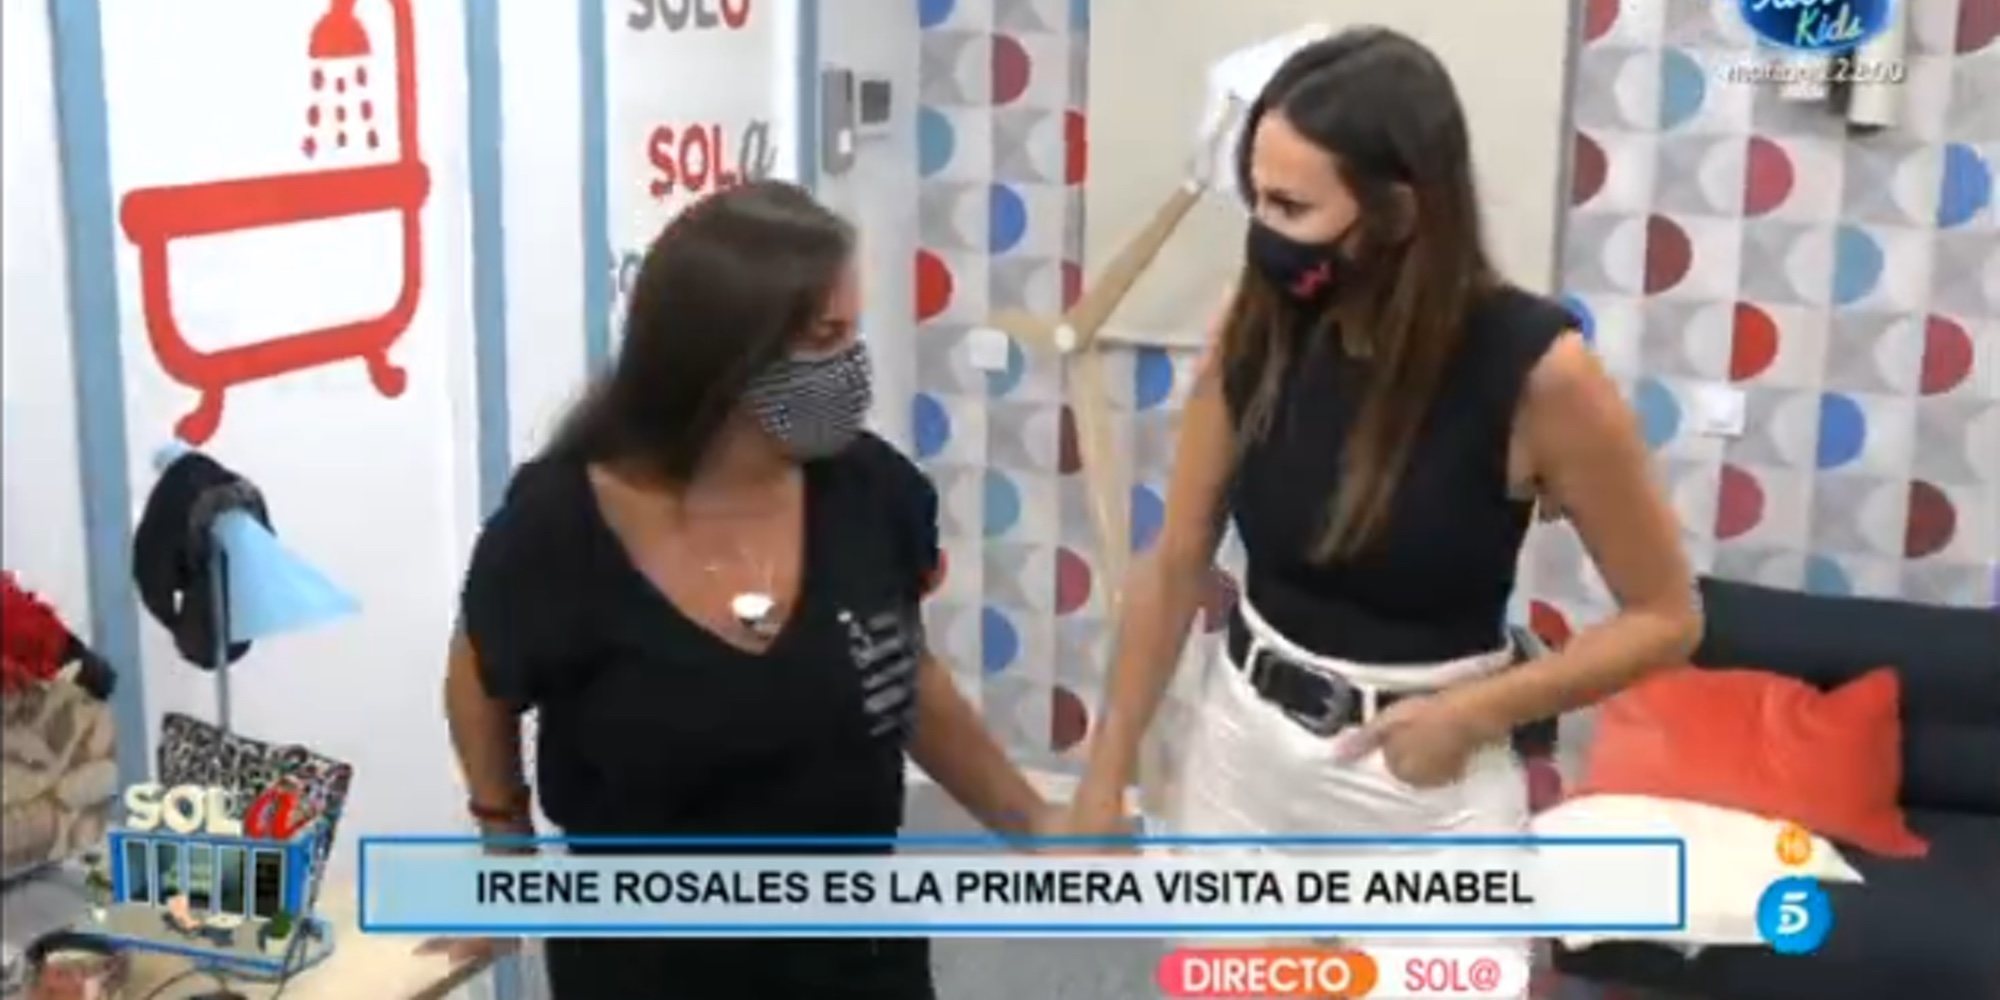 Irene Rosales visita a Anabel Pantoja en 'Sola' para levantarle el ánimo: "Esto es un trabajo, aguanta"